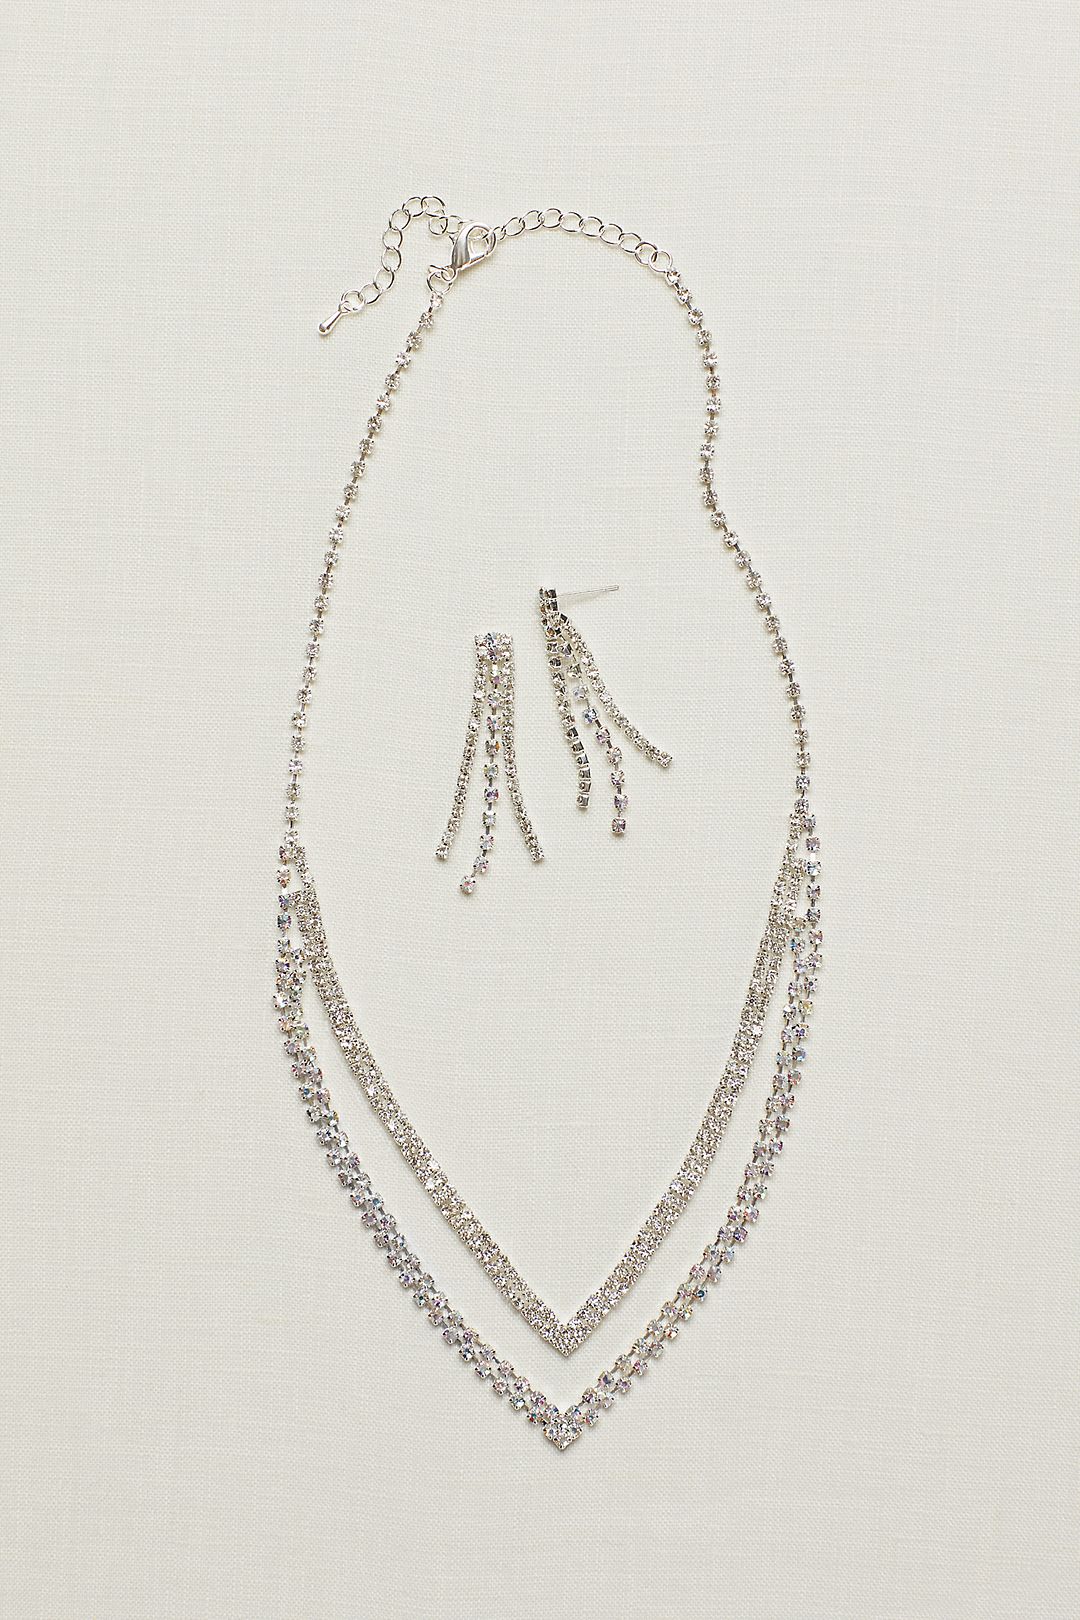 Layered V Neck Rhinestone Necklace and Earring Set Image 1